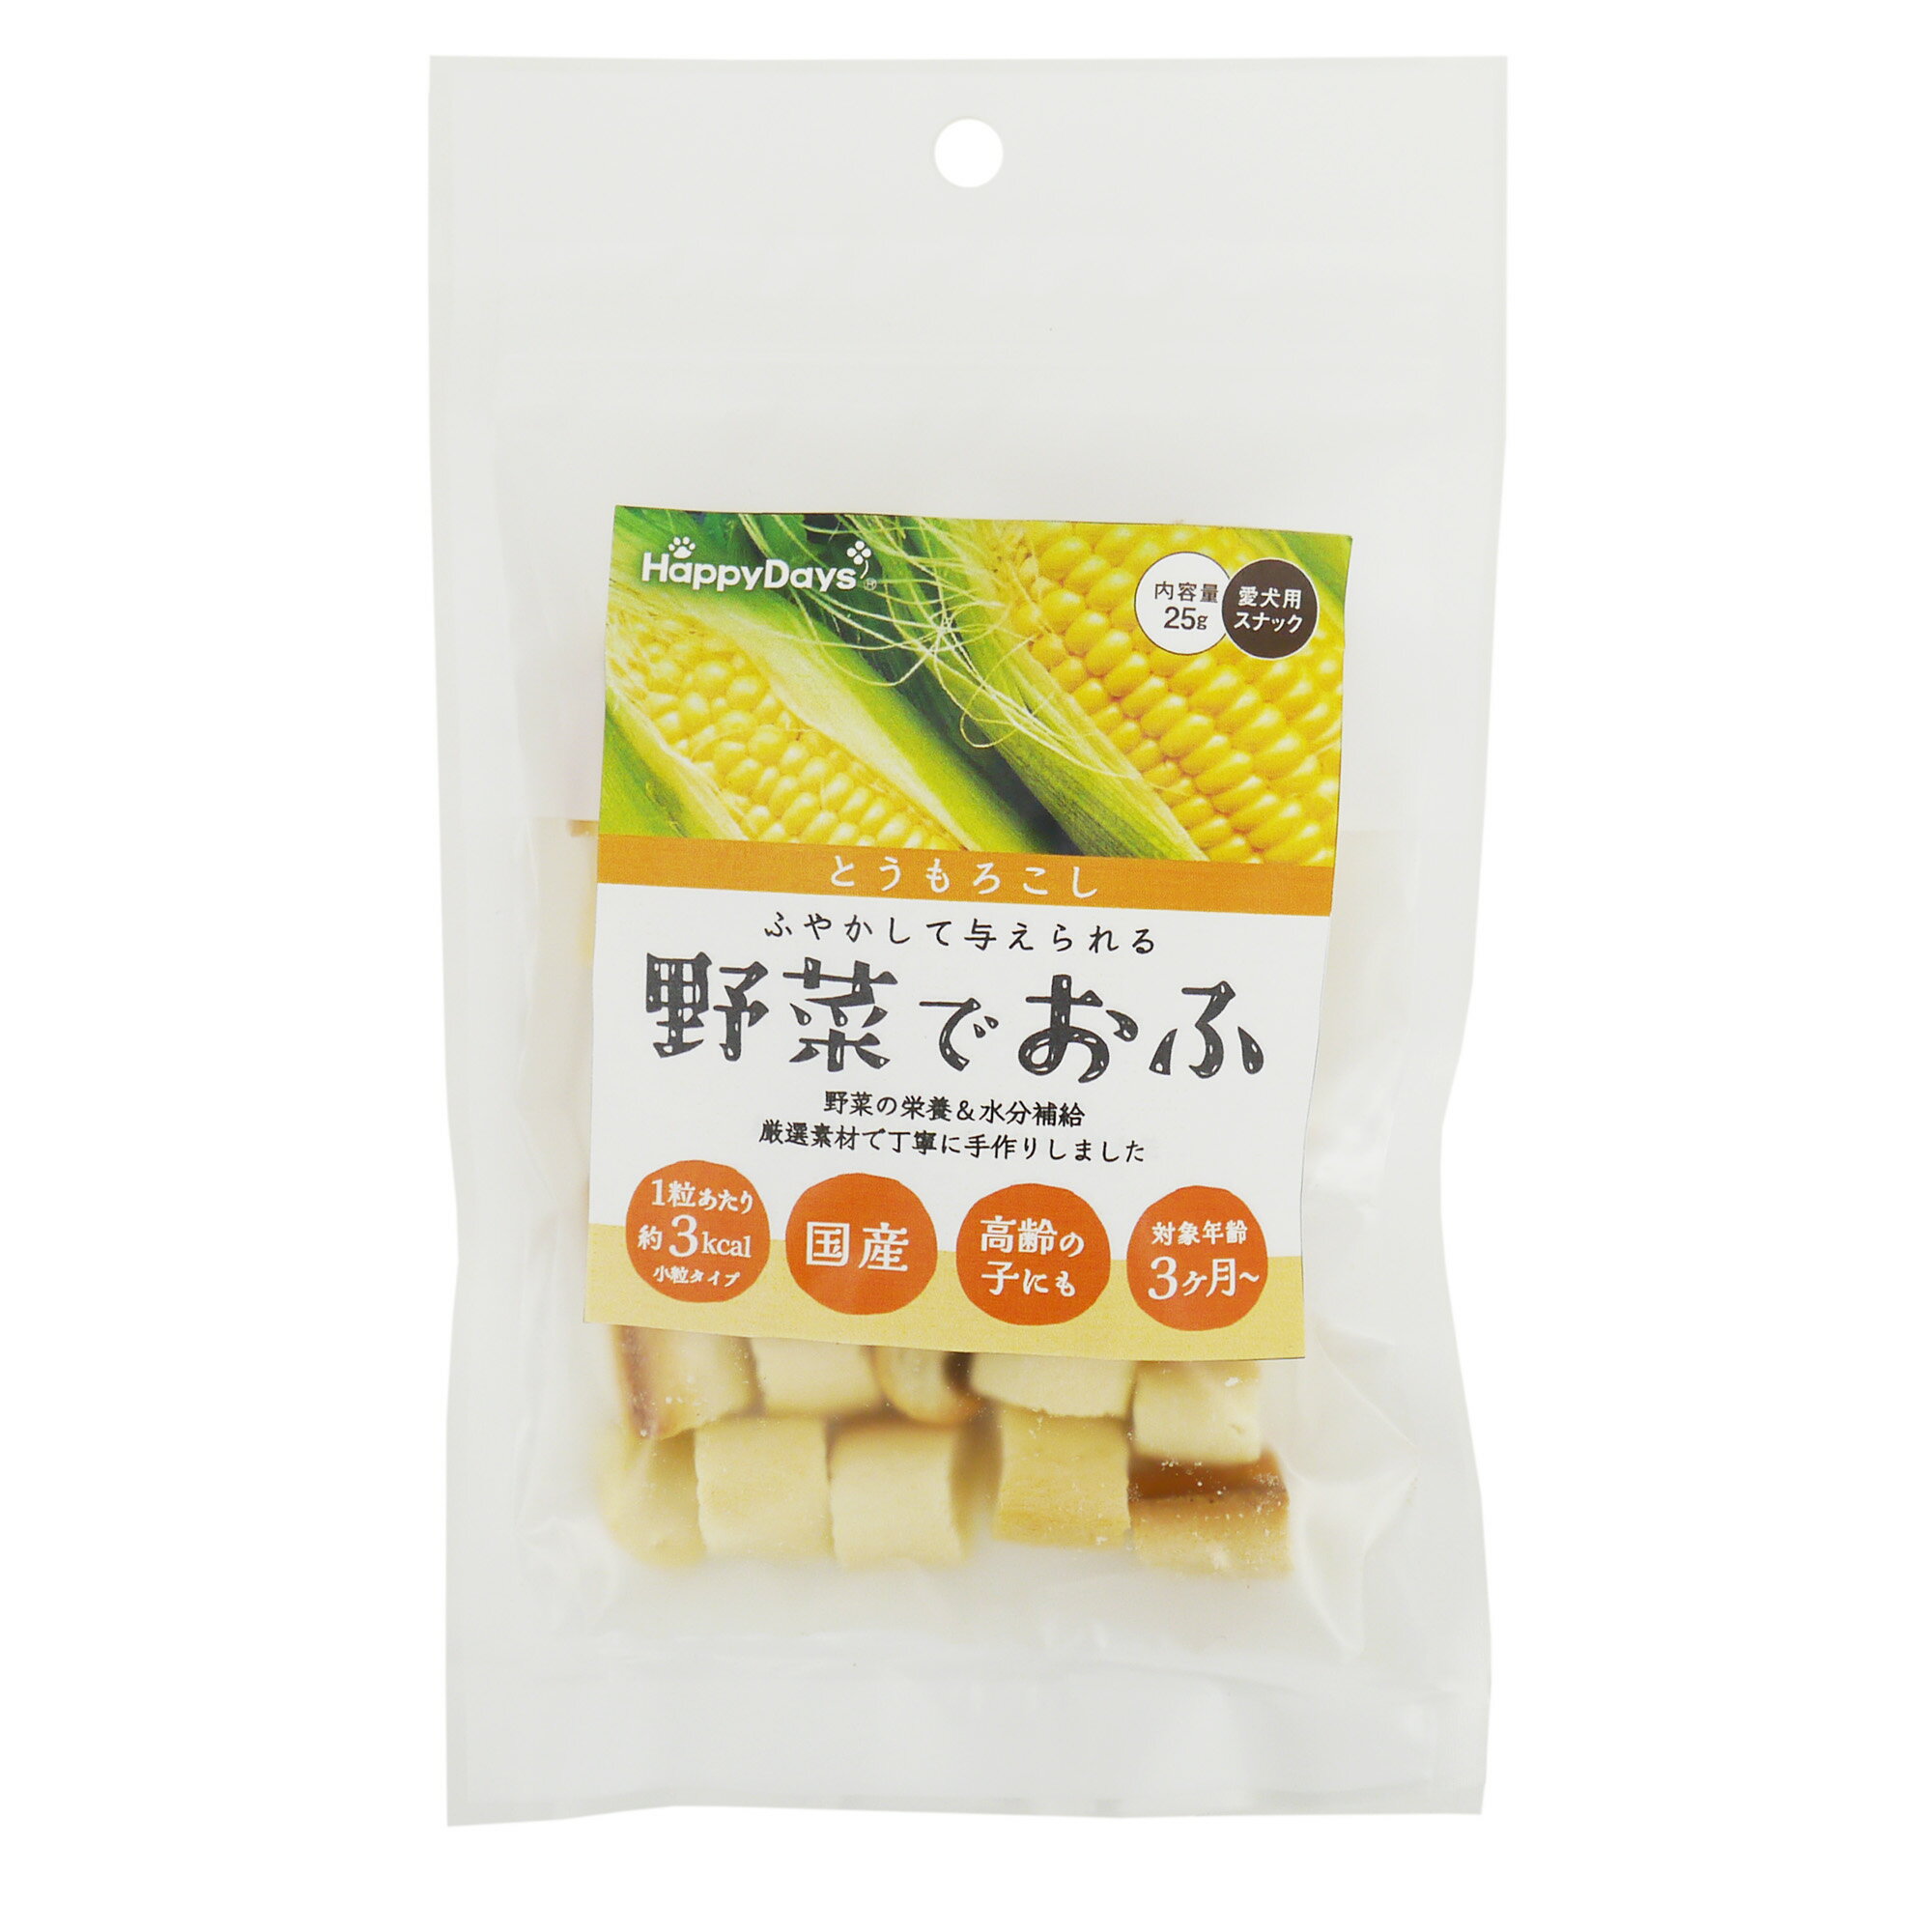 PetProJapan ペットプロジャパン HappyDays 野菜でおふ とうもろこし味 25g